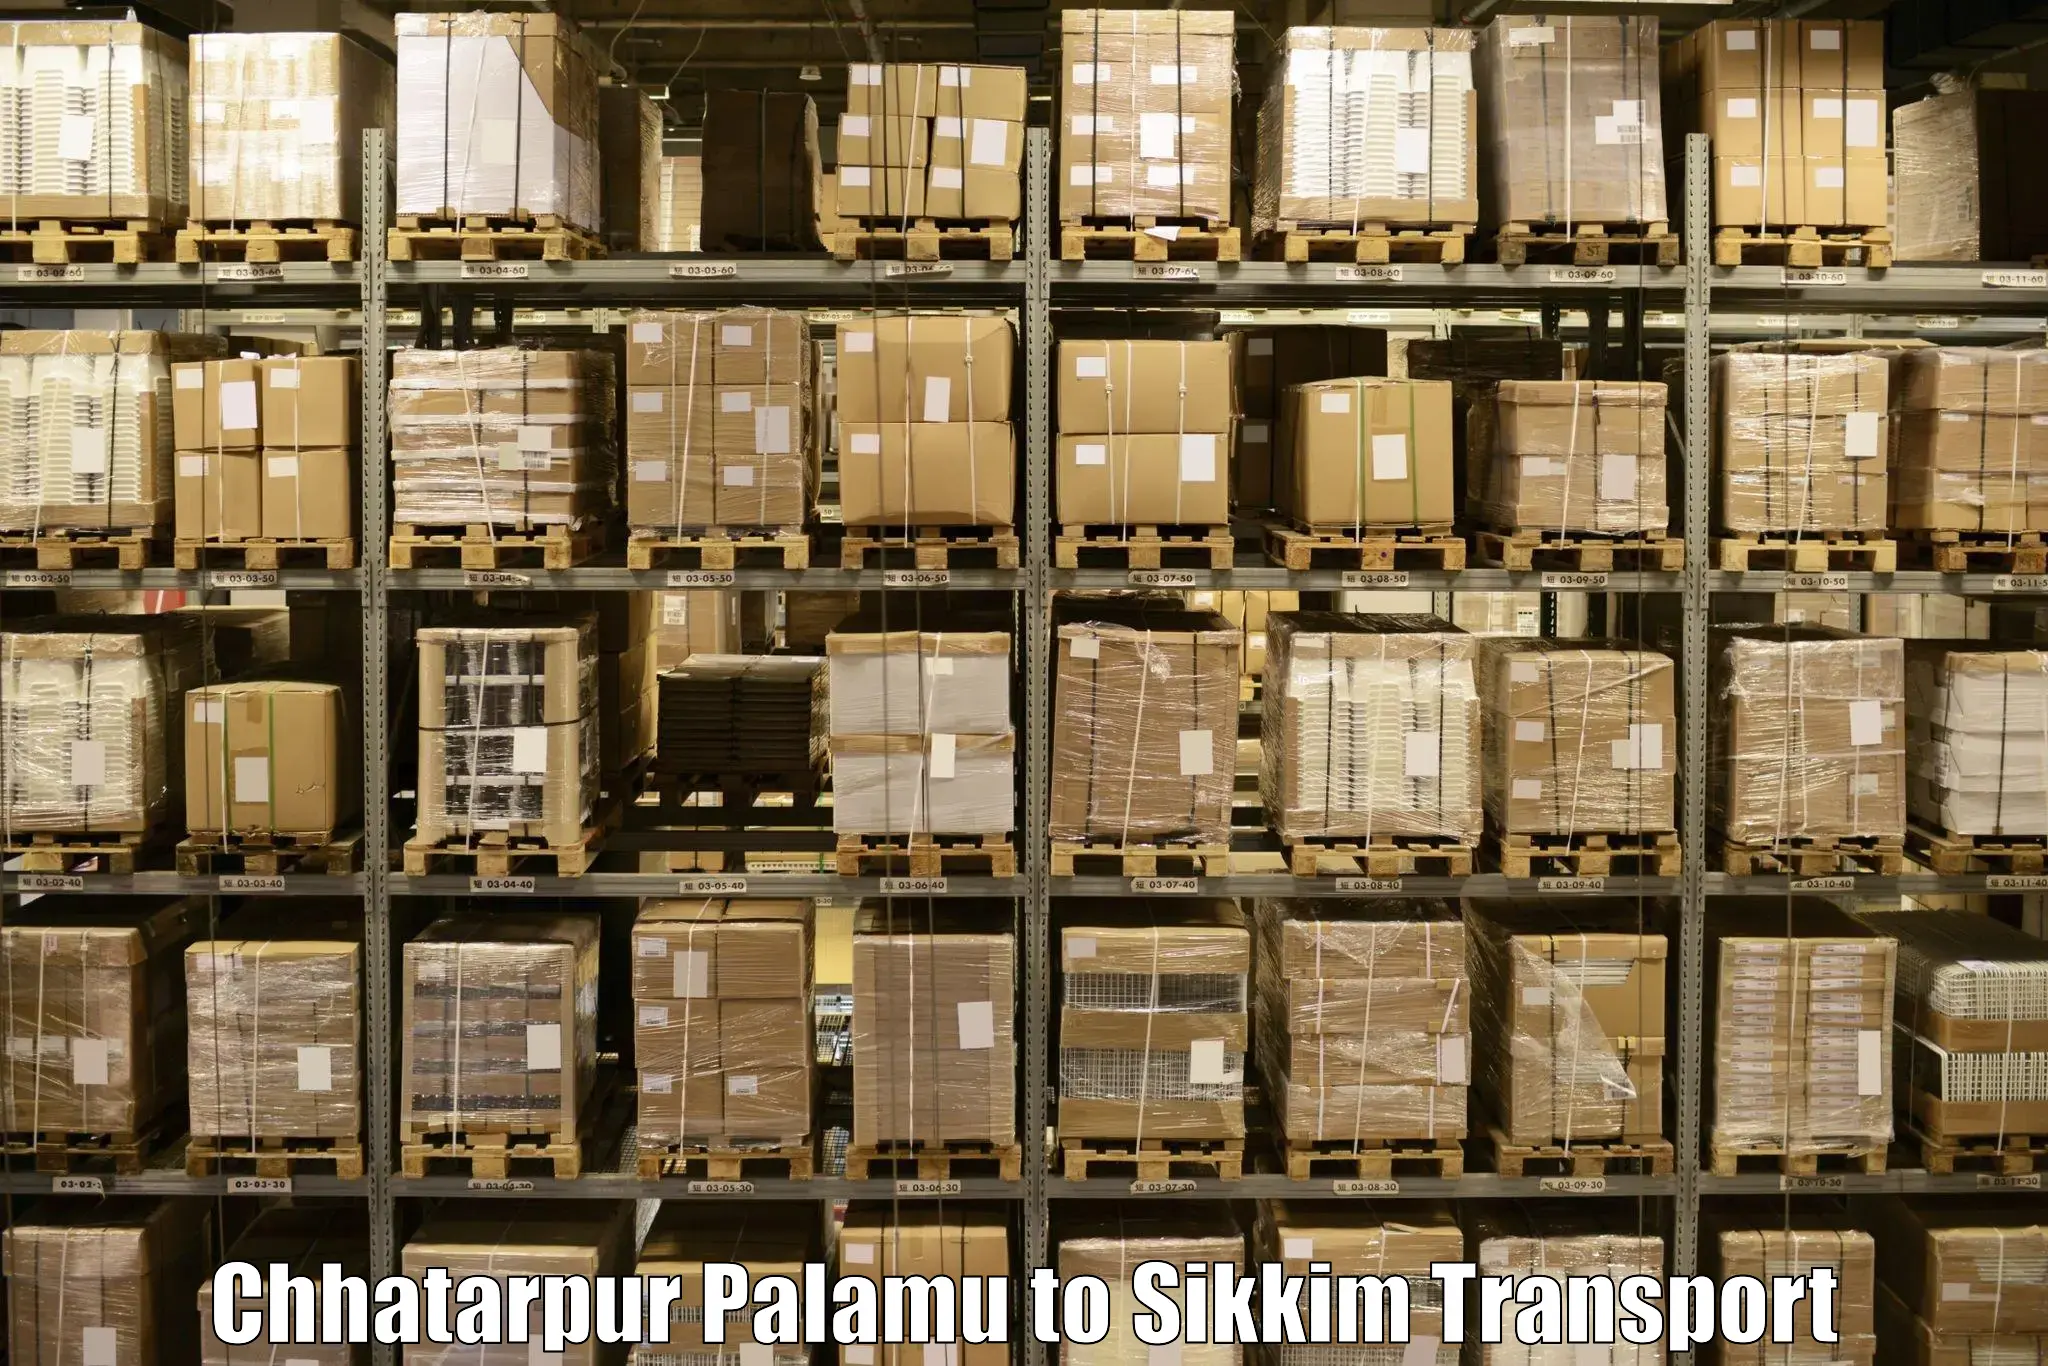 Transport in sharing Chhatarpur Palamu to Mangan